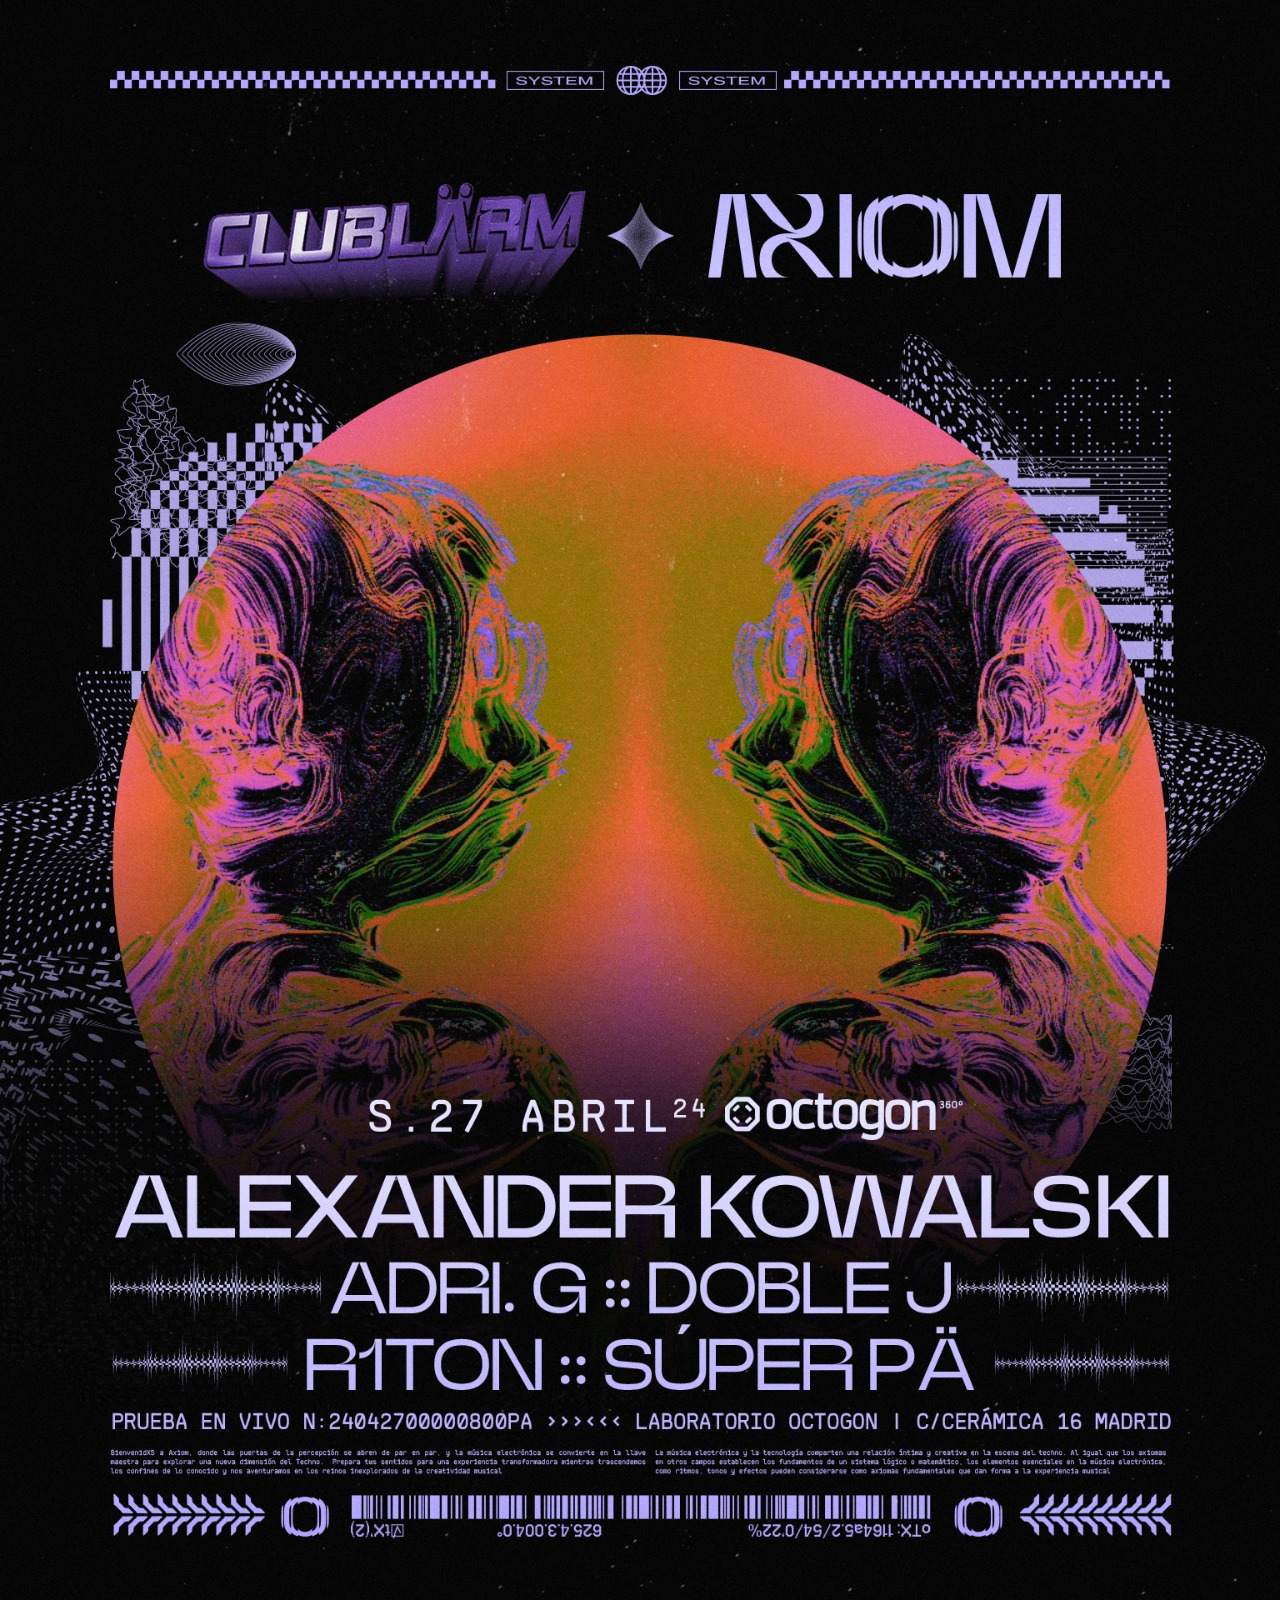 Clublarm & Axion (Alexander Kowalski) - Página frontal